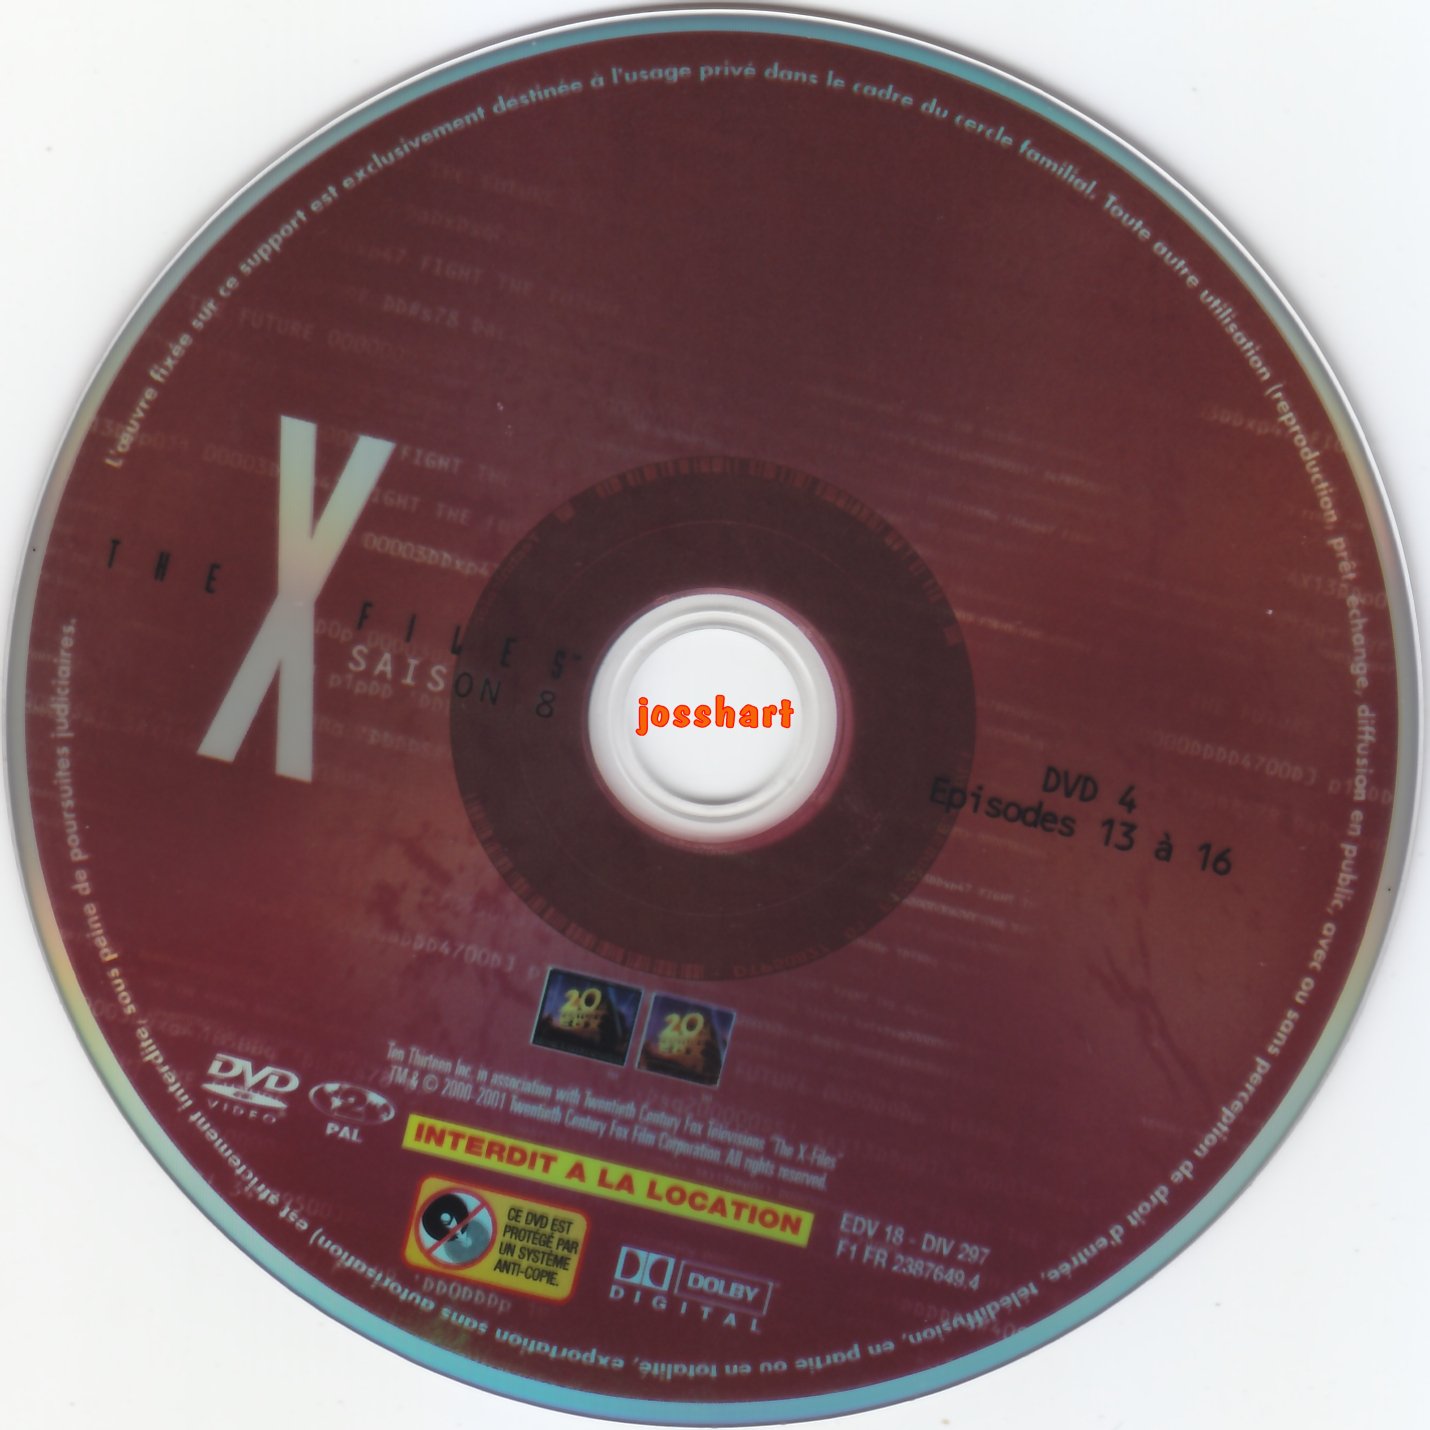 The X Files Saison 8 DVD 4 v2